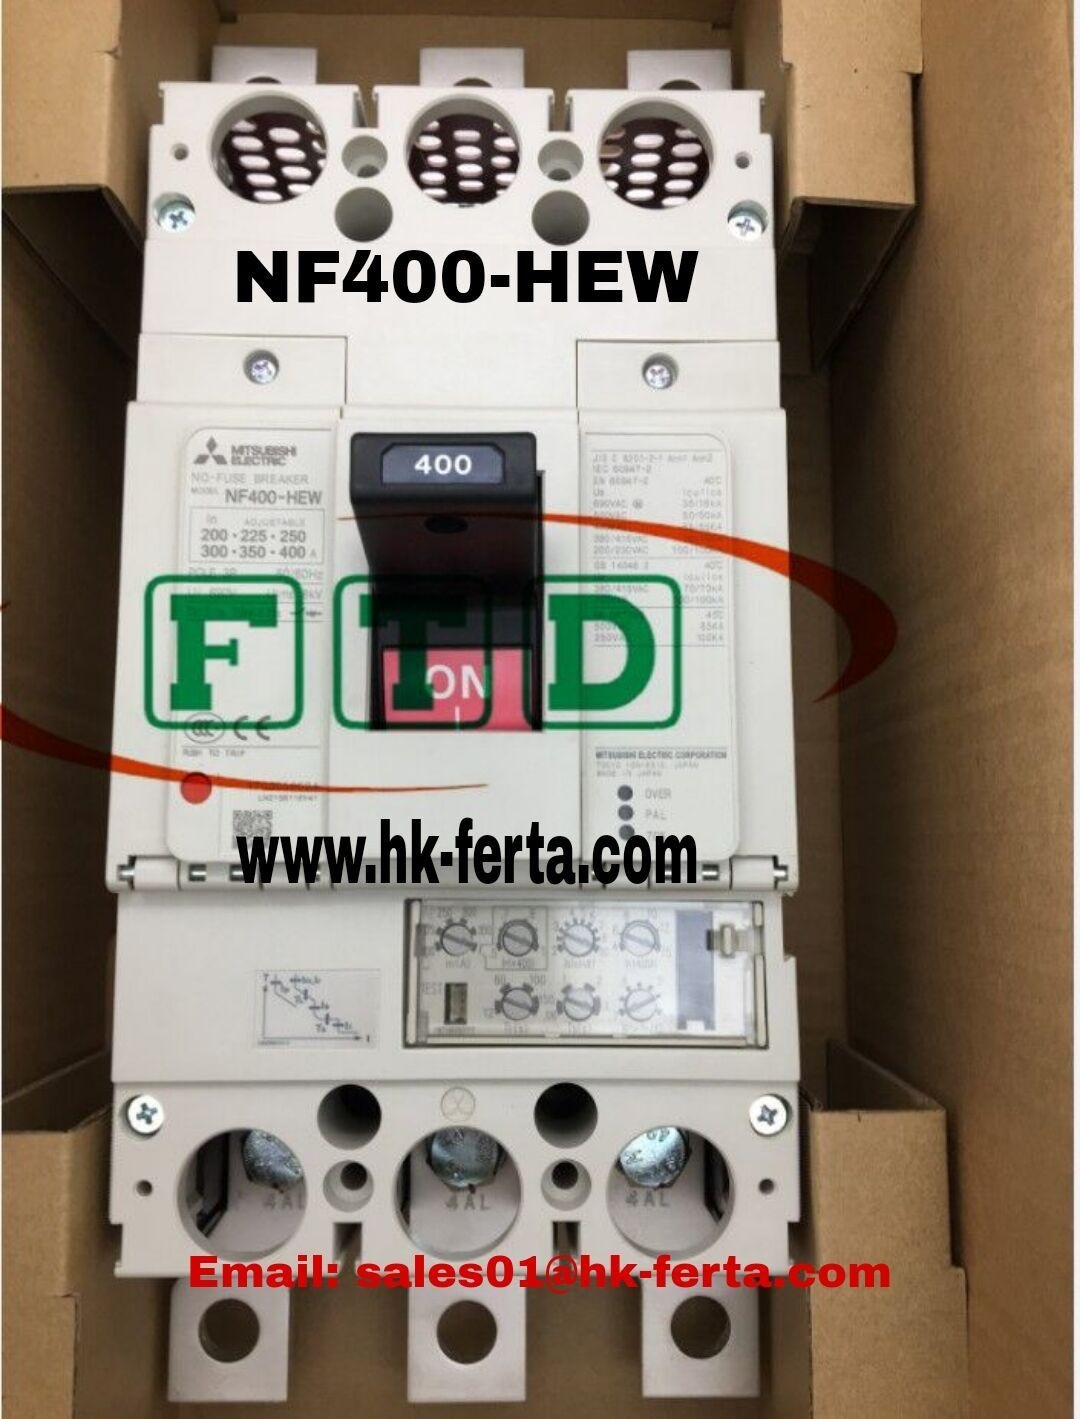 NF400-HEW